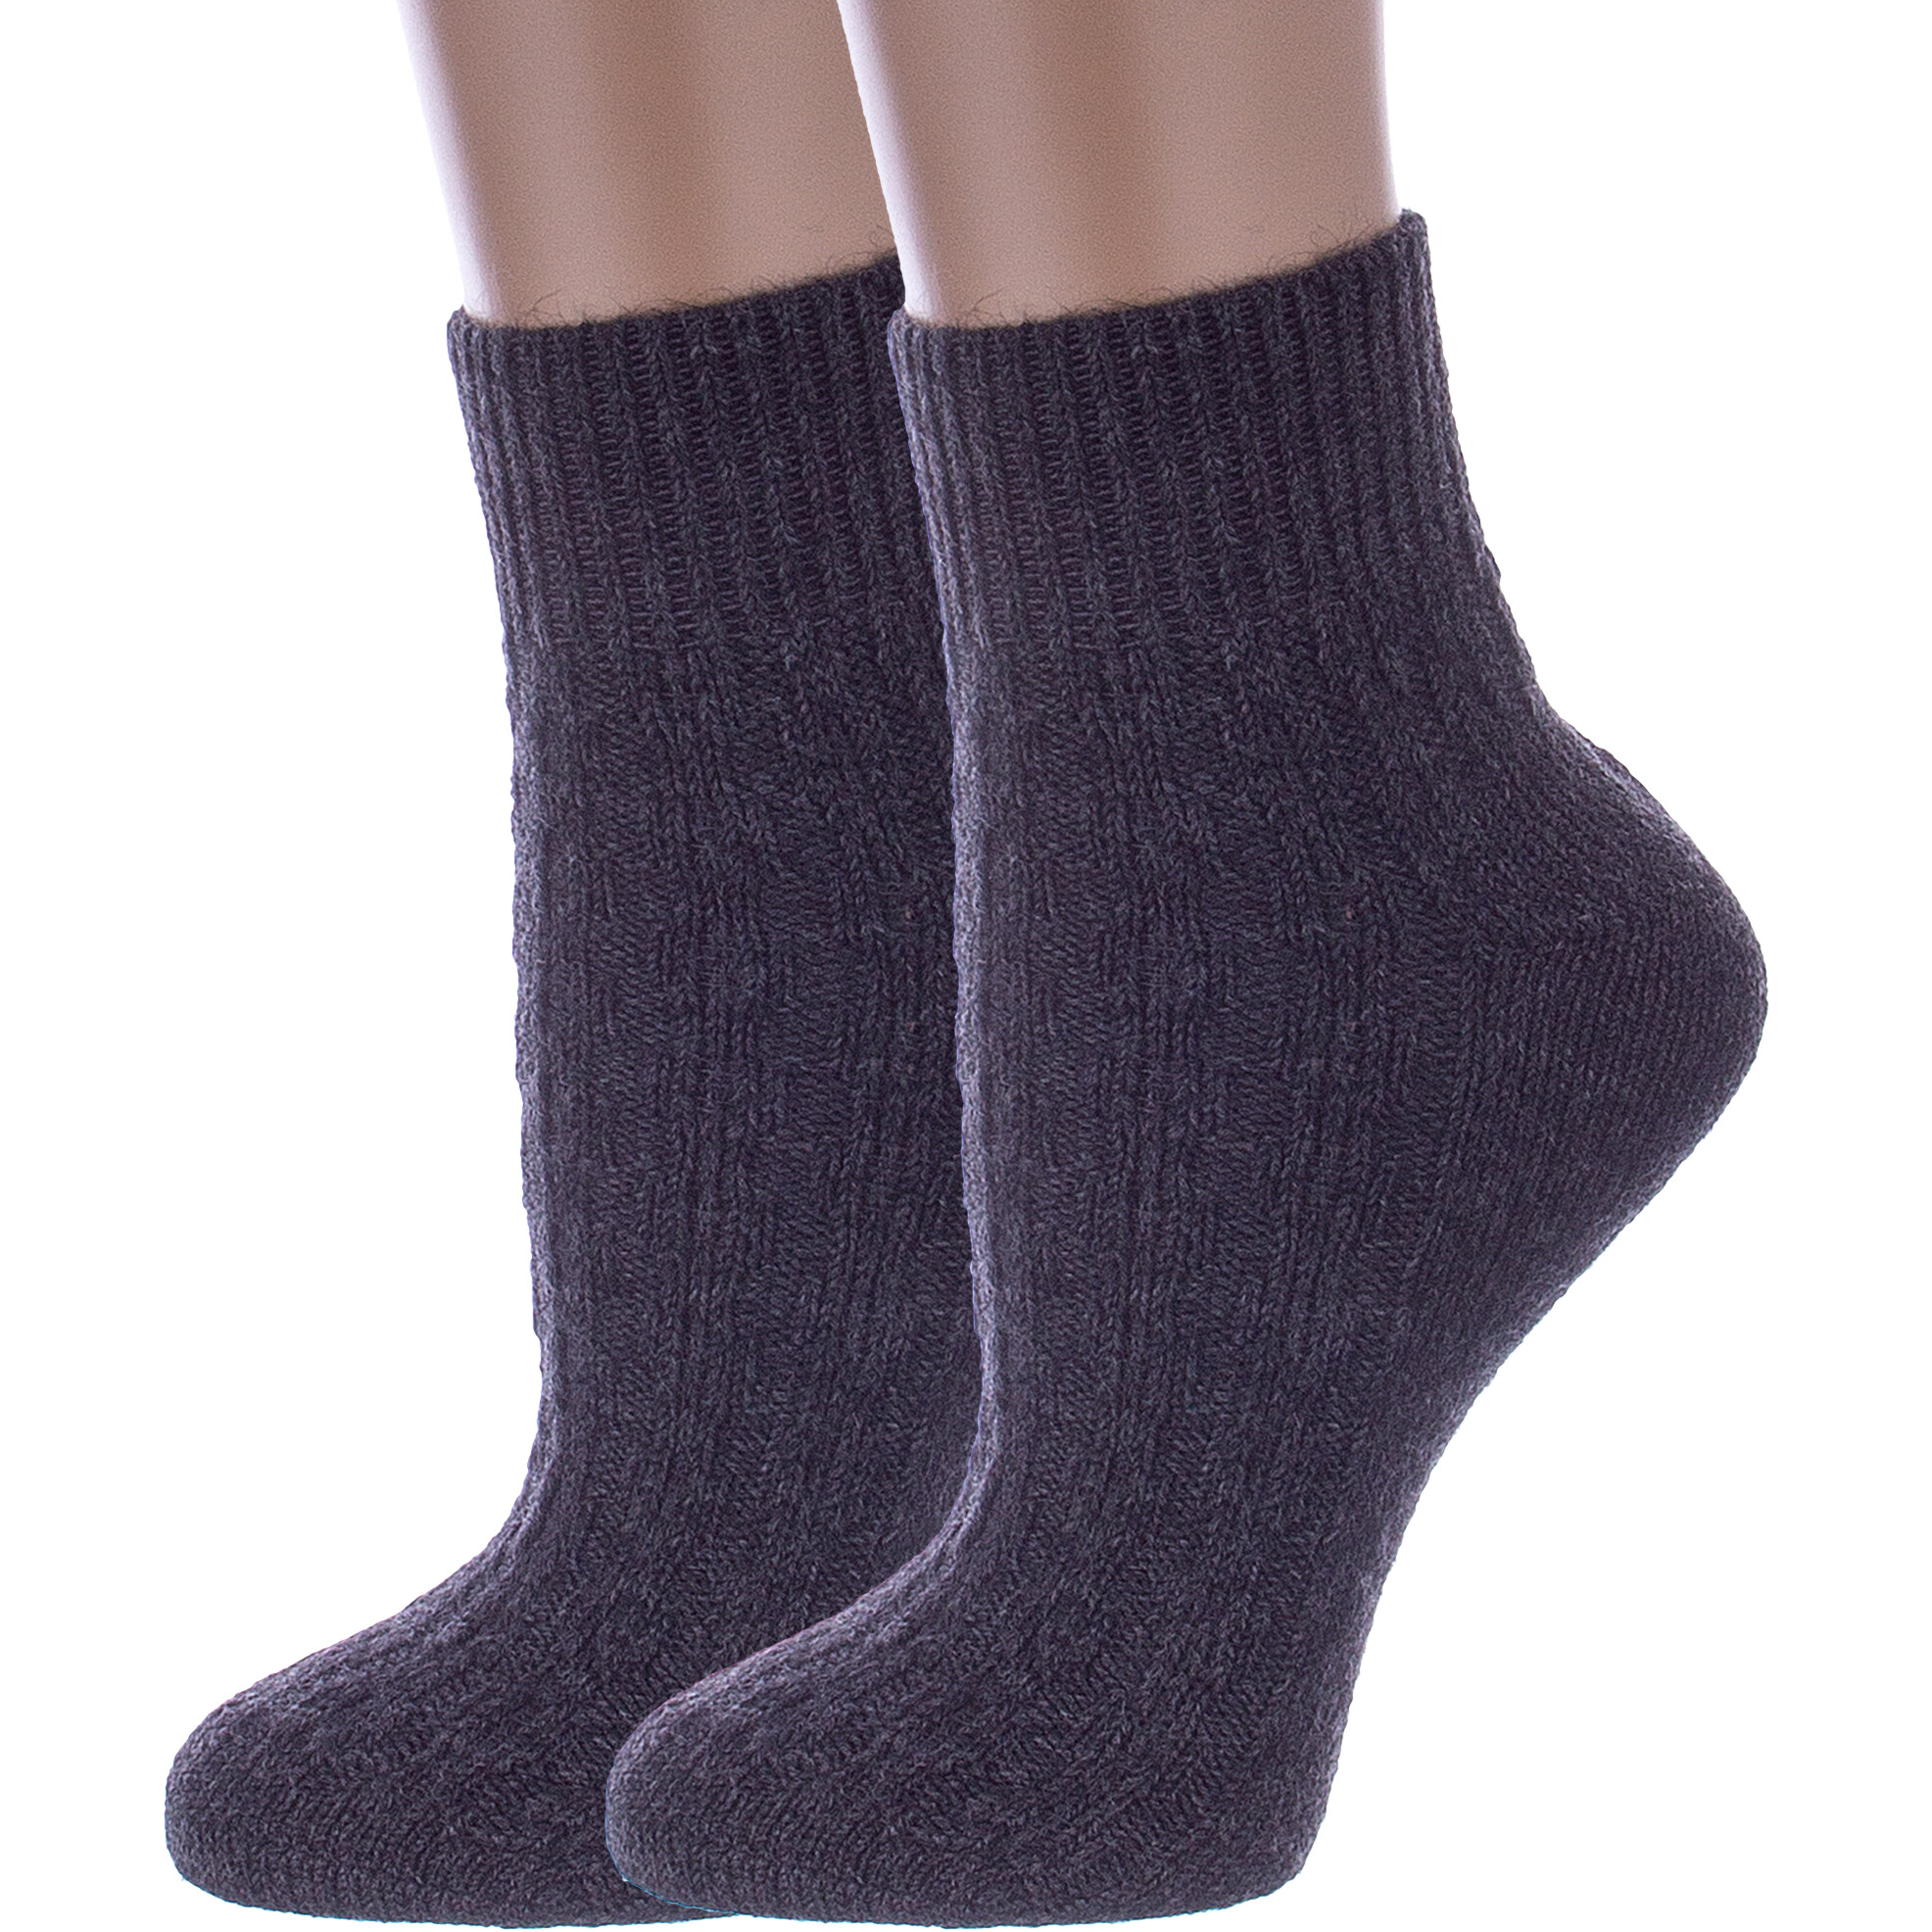 Комплект носков женских Rusocks 2-Ж-23801 серых 23-25, 2 пары